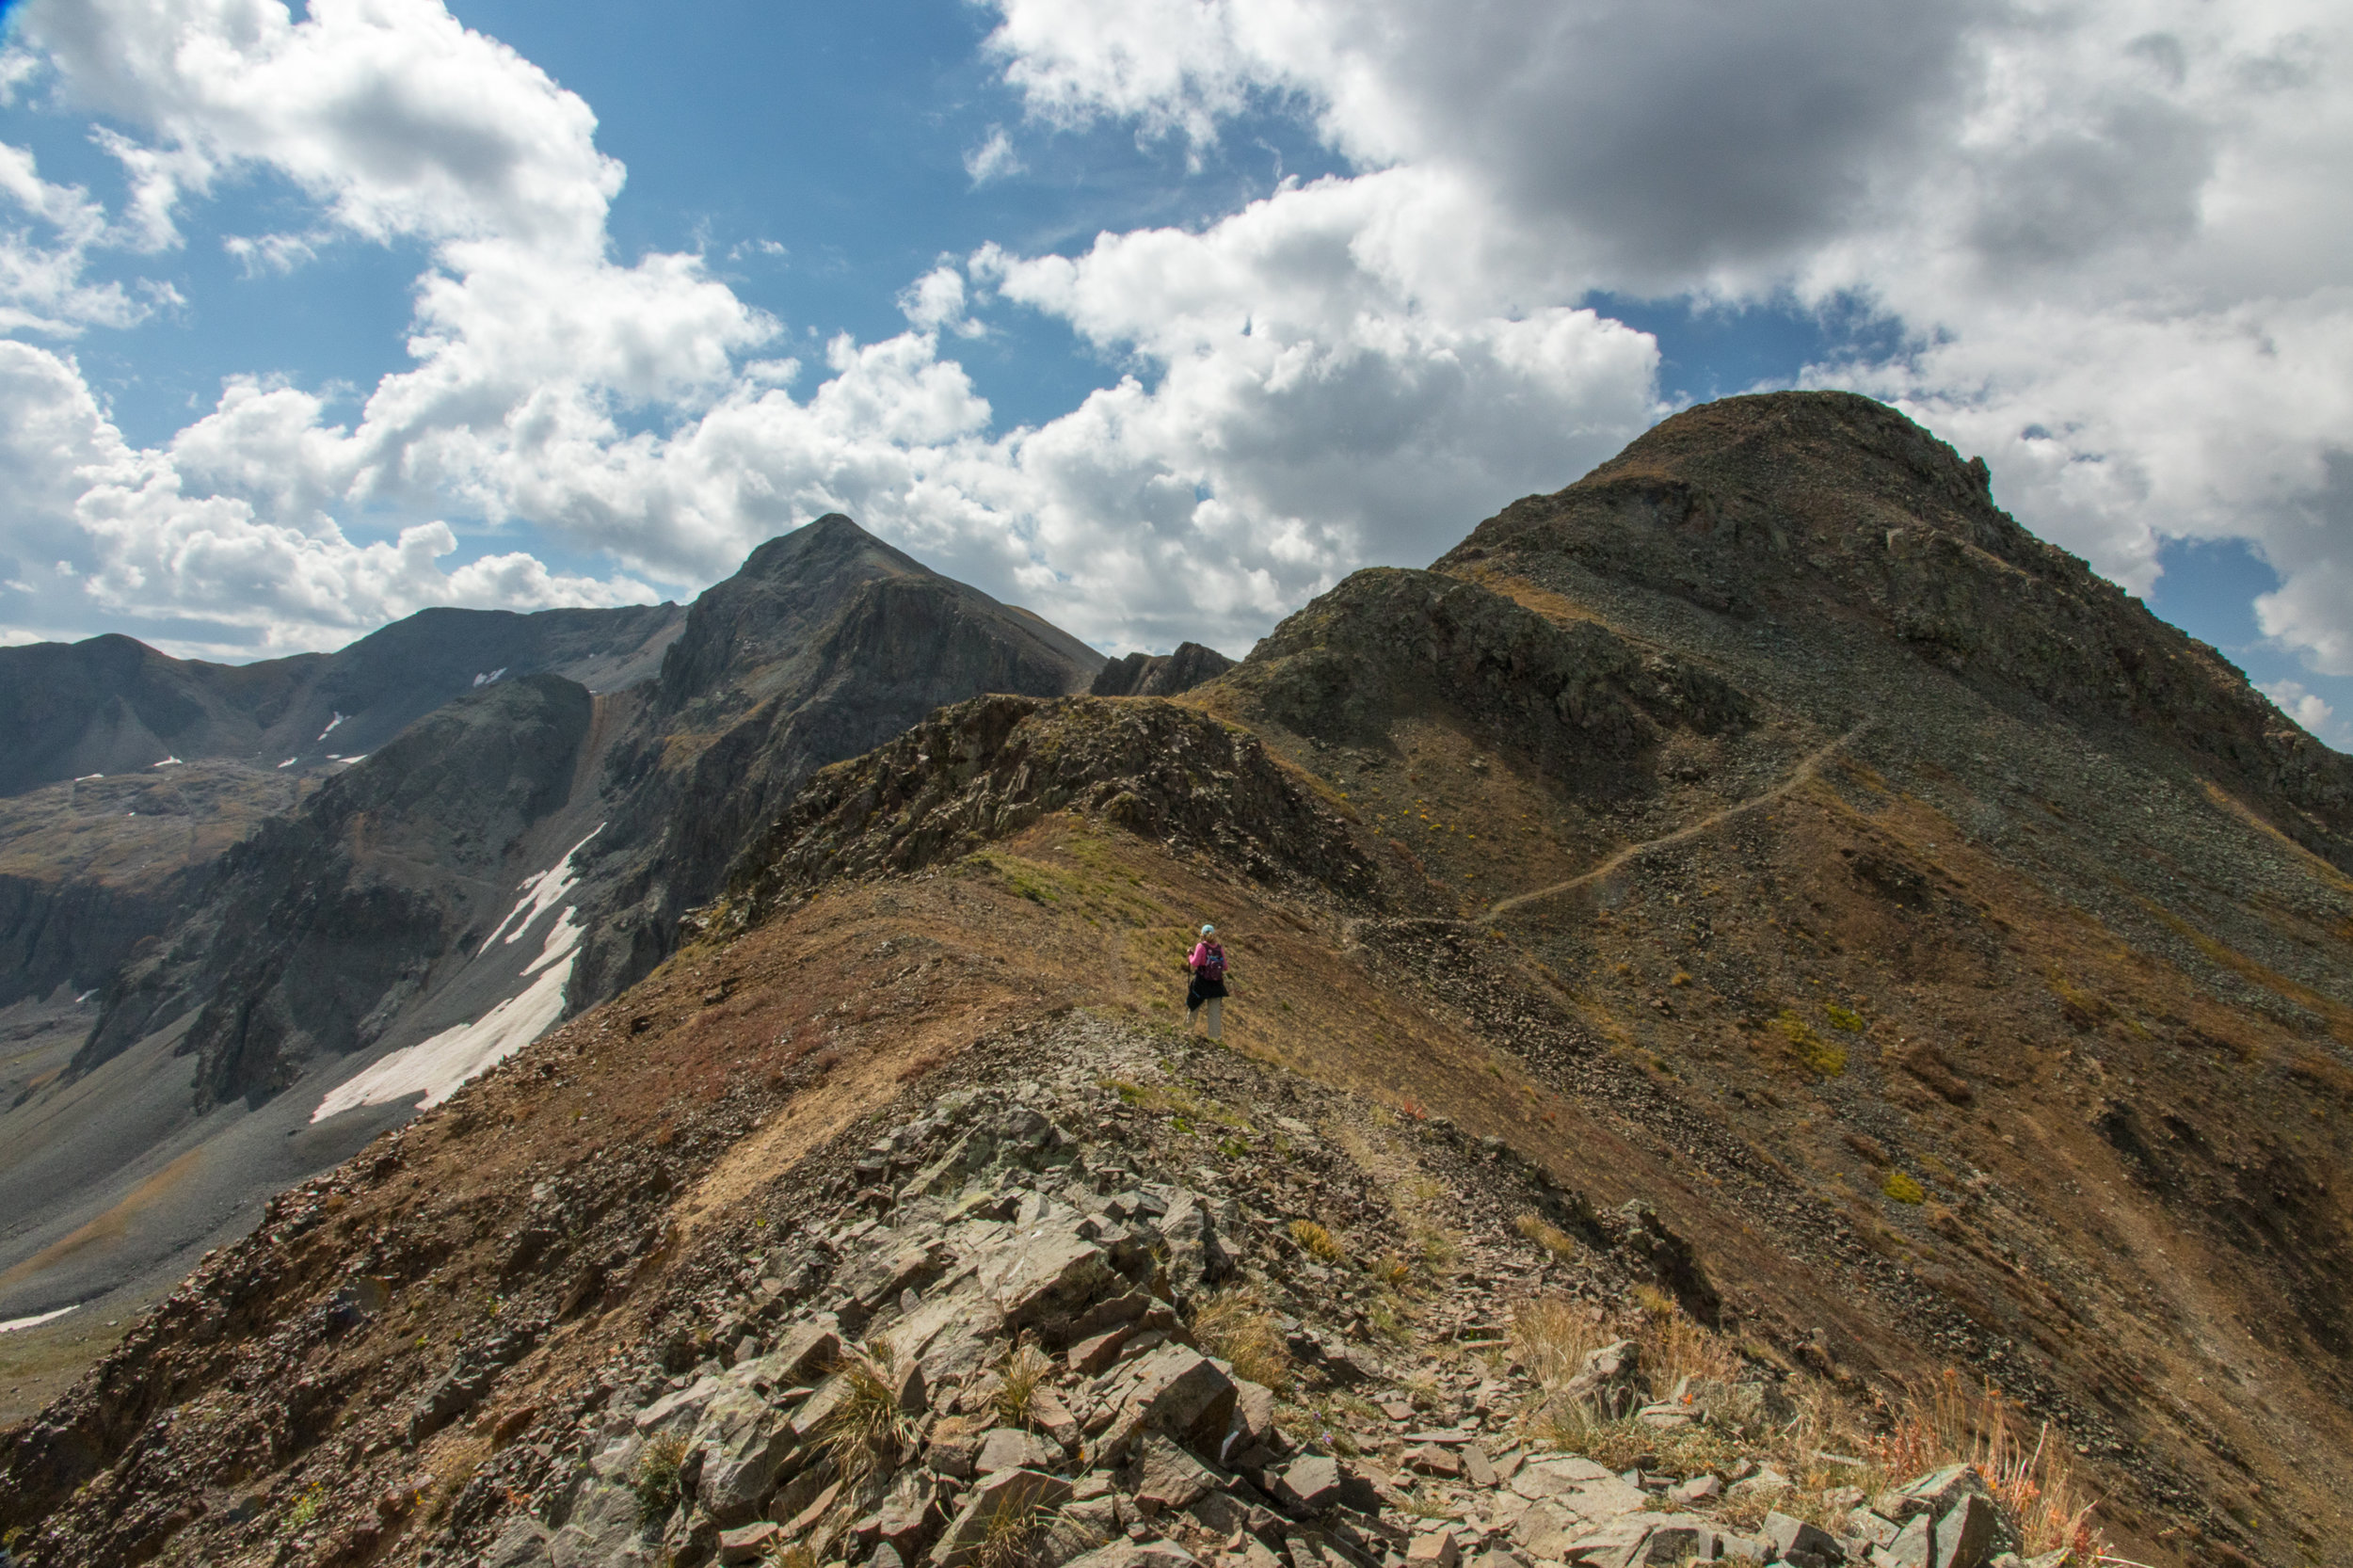 Lisa Vajda hiking across the ridge, Image # 7636